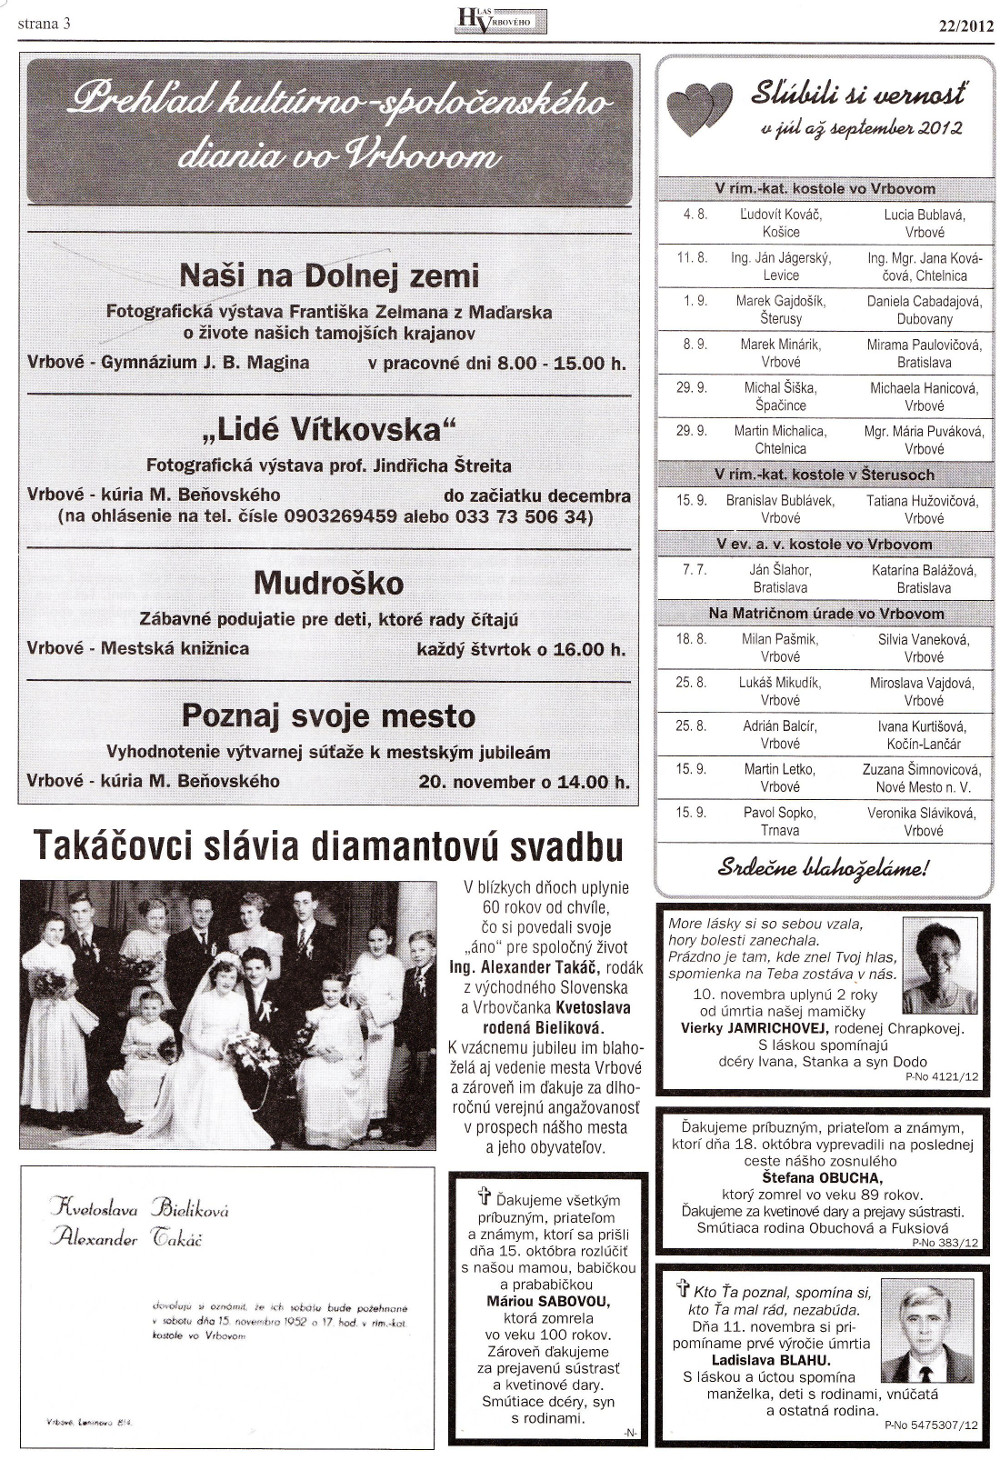 Hlas Vrbového 22/2012, strana 3